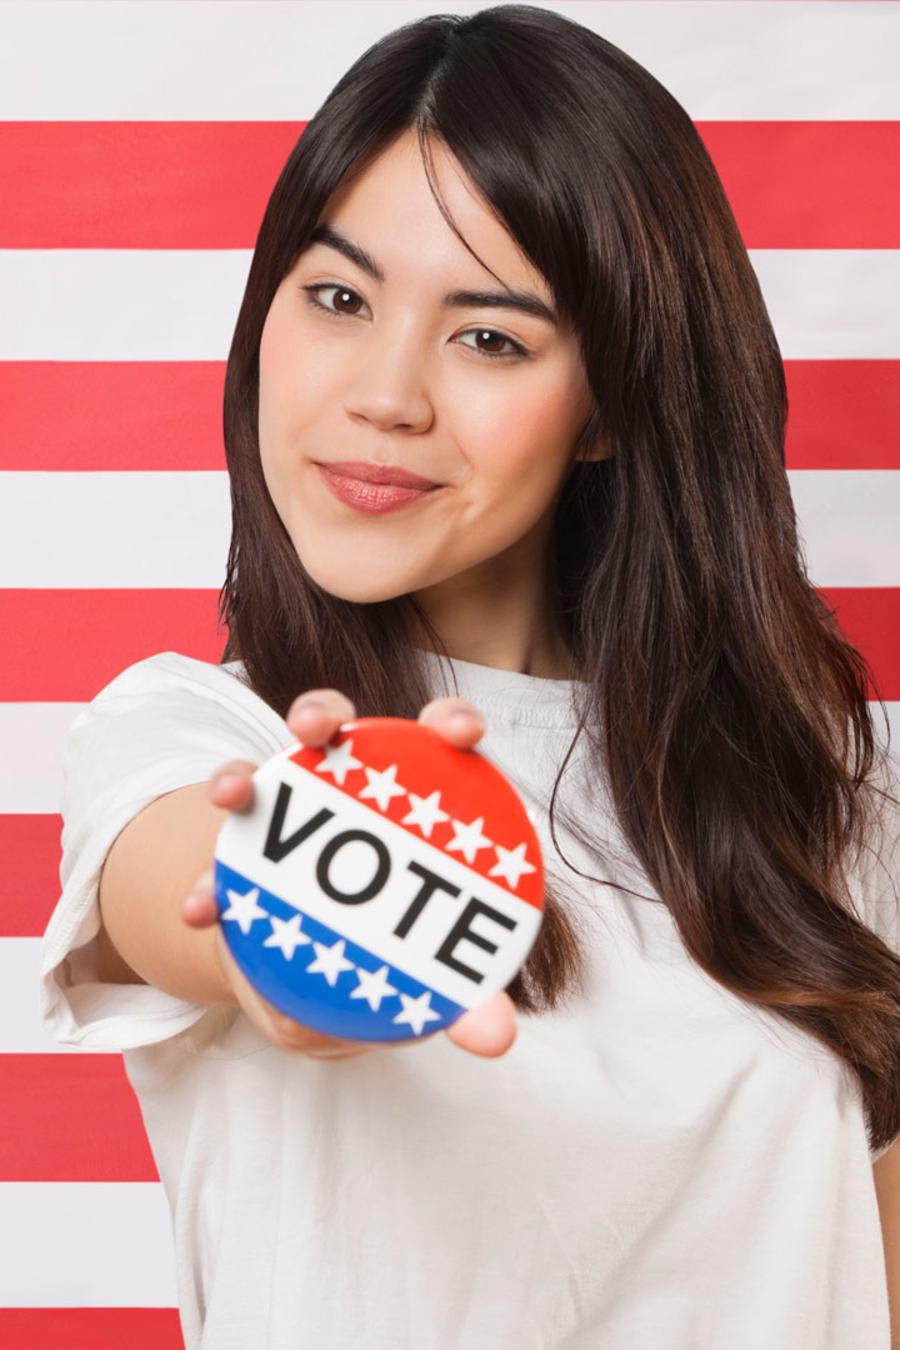 Mujer joven con cartel de Vote, frente a bandera de EEUU